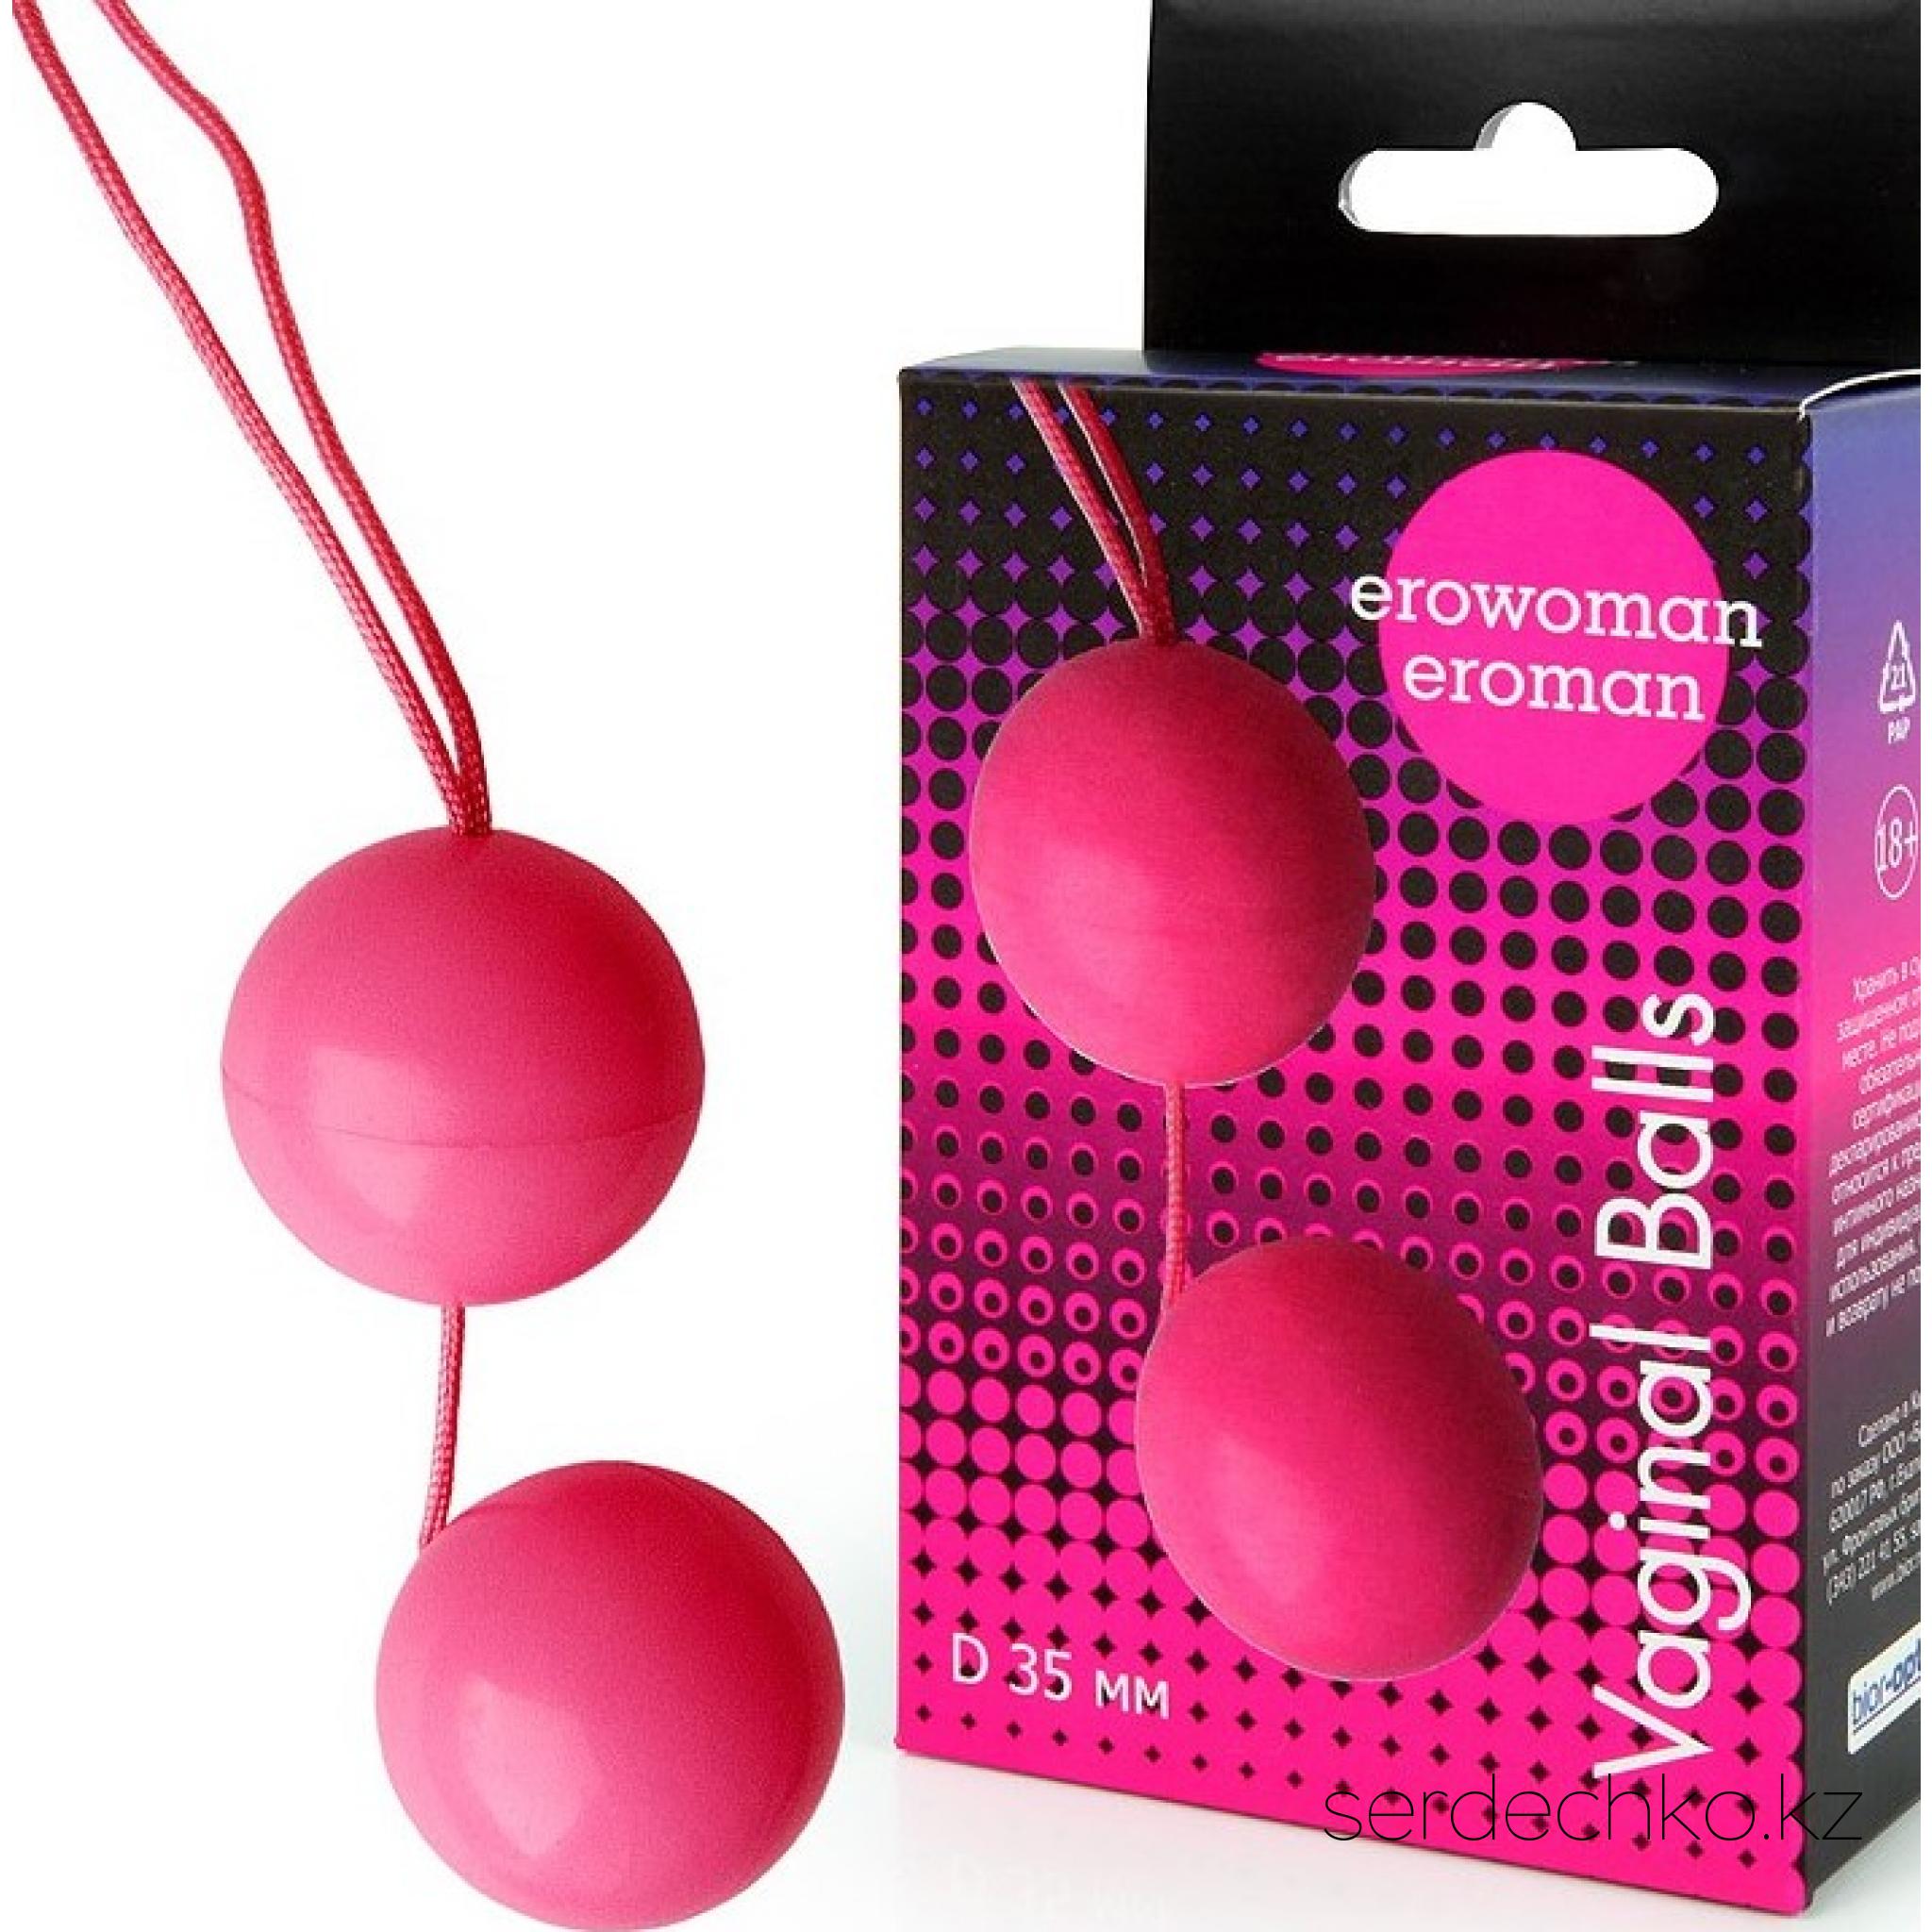 Вагинальные шарики Erowoman Balls, диаметр 35 мм, розовые, 
	Вагинальные шарики - это идеальные сексуальные игрушки для женщин, которым нужно развитие вагинальные мышц, а также для тех кто ищет новые способы получения сексуального удовольствия. Шарики исполнены из безопасного пластика.
	
	Находясь во влагалище, вагинальные шарики будут перекатываться с каждым Вашим движением и при каждом шаге. Вы можете ввести шарики во влагалище и делать то, что Вы хотите - при этом Вы будете наслаждаться стимуляцией, но никто не будет знать о том, что Вы чувствуете. Просто вставьте шарики во влагалище и прогуливайтесь. Шары начнут кататься, доставляя вам несравненное удовольствие.
	
	До и после использования шарики промываются теплой водой с мылом. При использовании шариков рекомендуется всегда применять смазку-любрикант.
